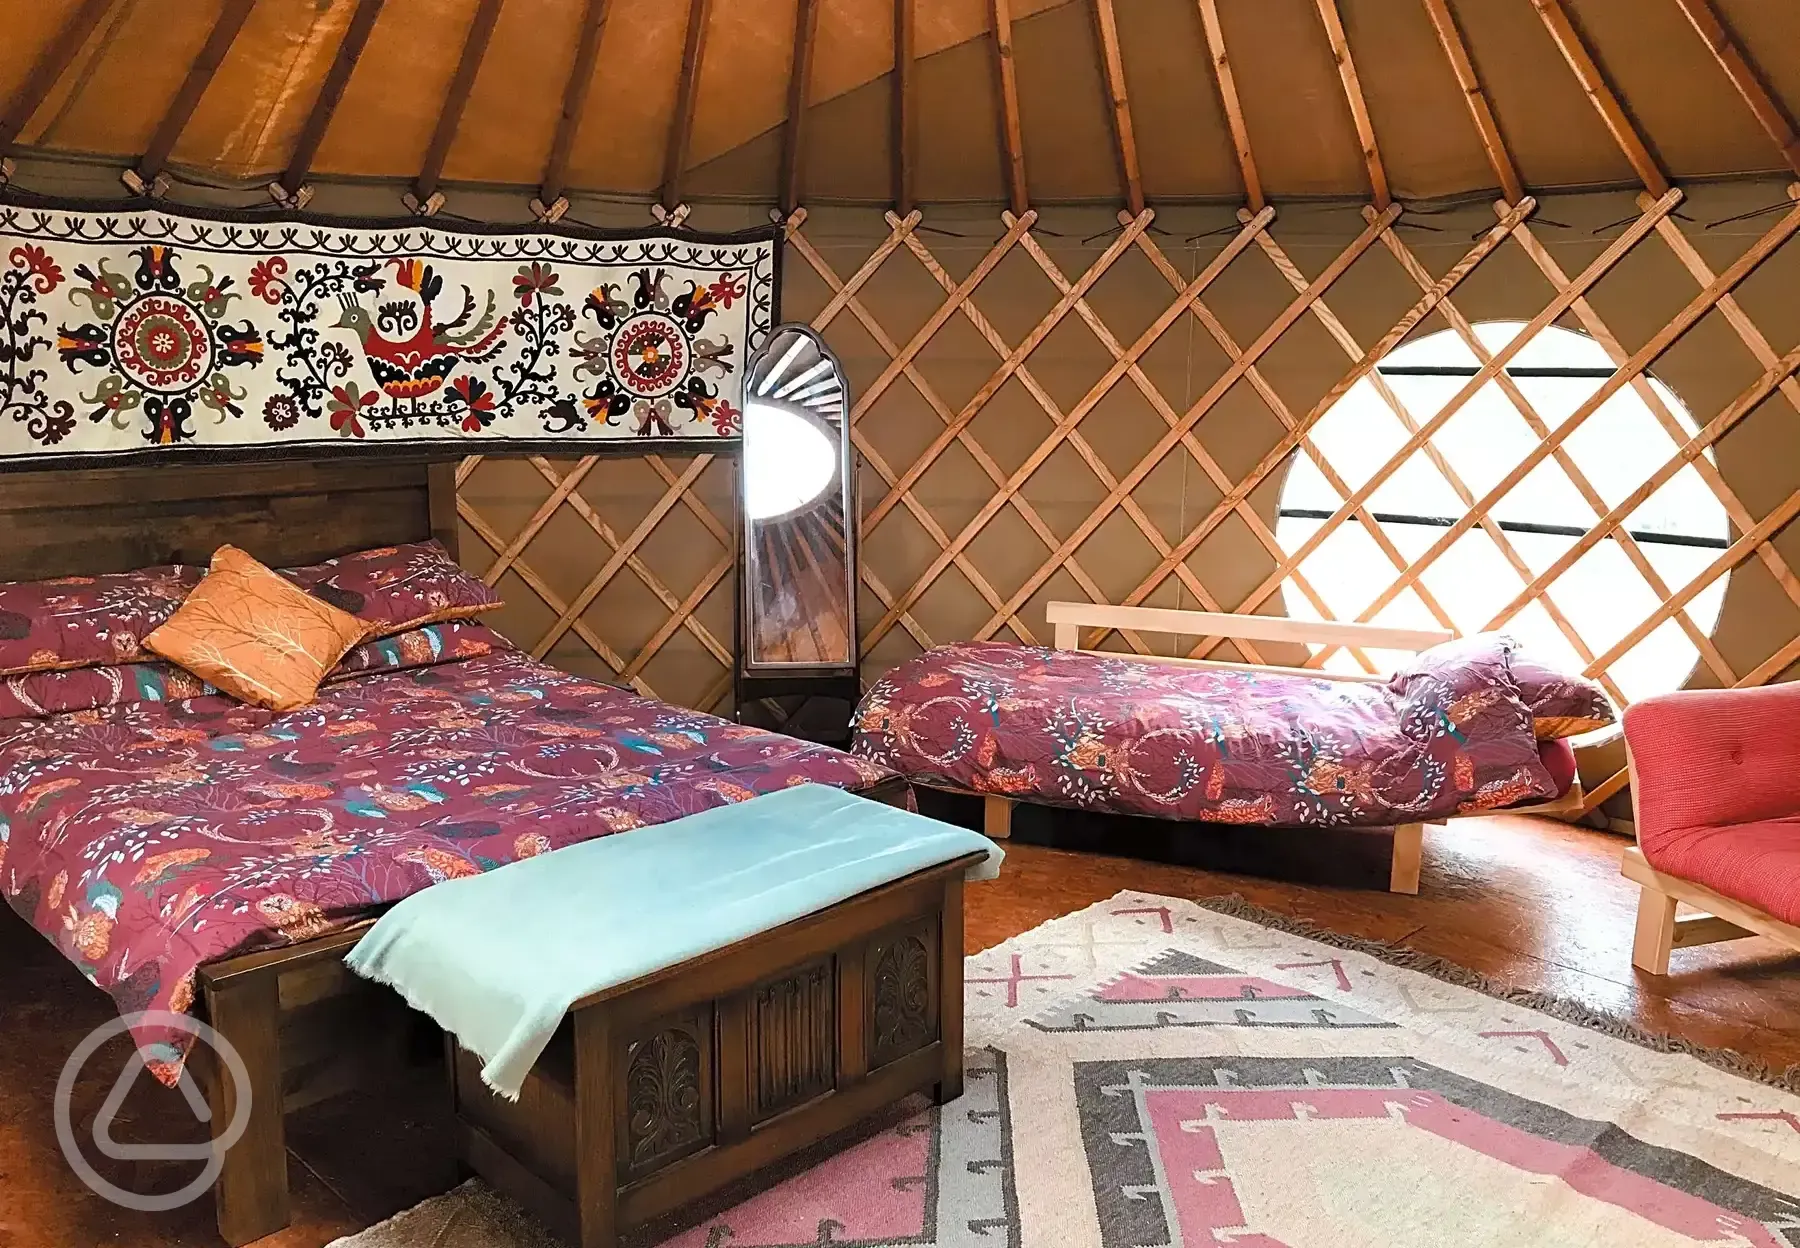 Bramble Yurt interior